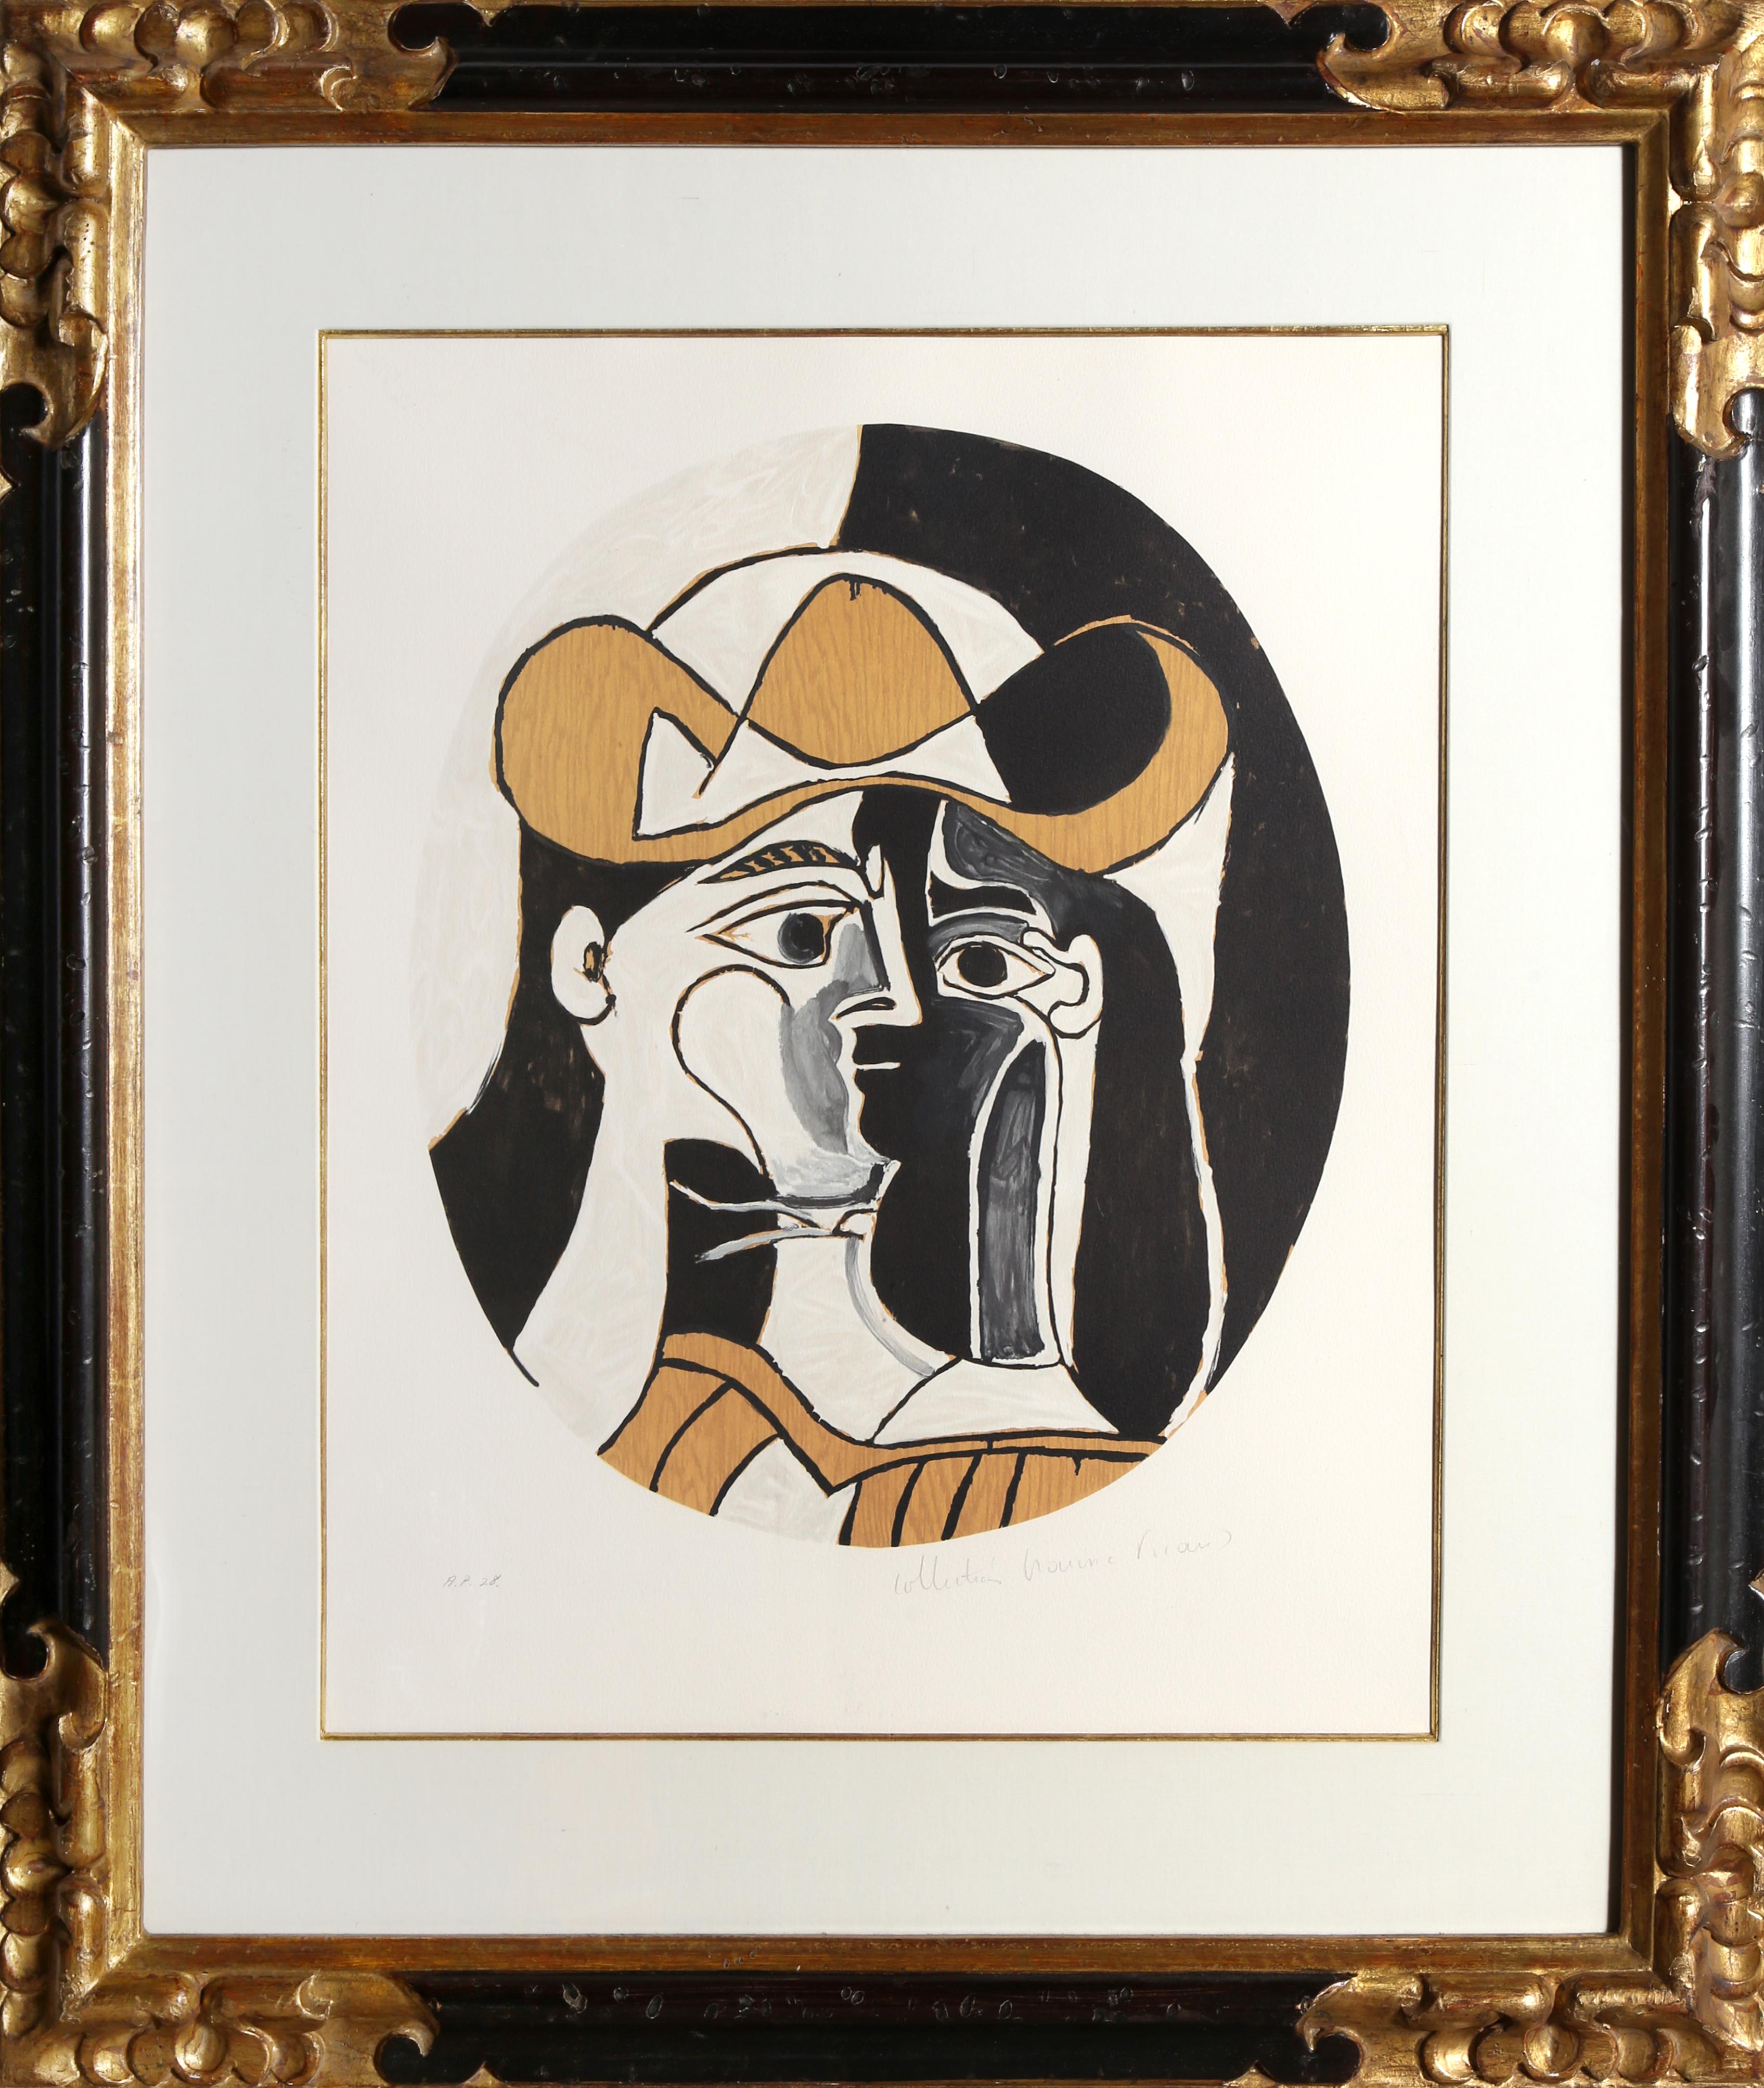 Femme au Chapeau, Cubist Lithograph by Pablo Picasso